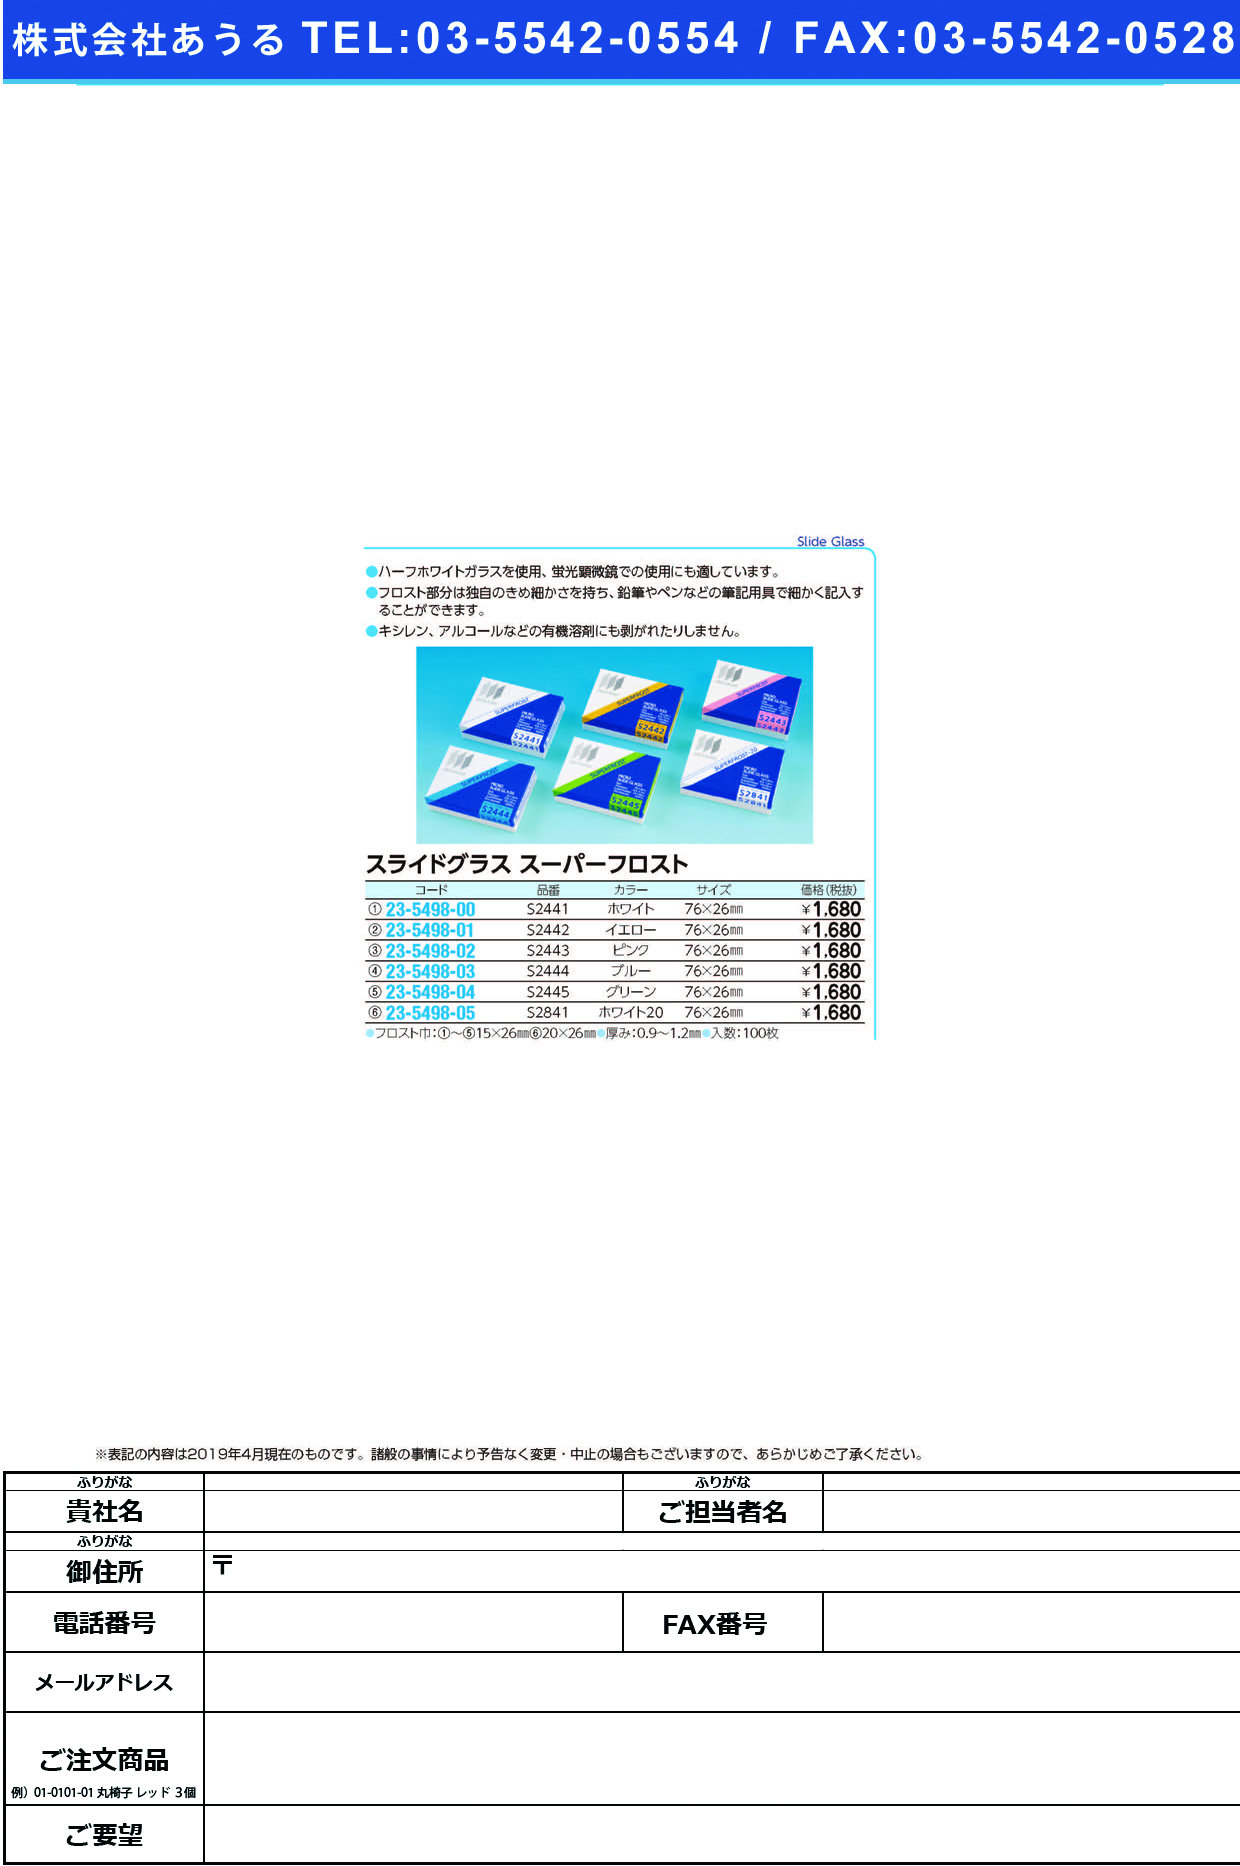 (23-5498-05)松浪スライドグラススーパーフロスト S2841(ﾎﾜｲﾄ20)100ﾏｲ ｽﾗｲﾄﾞｸﾞﾗｽｽｰﾊﾟｰﾌﾛｽﾄ【1箱単位】【2019年カタログ商品】